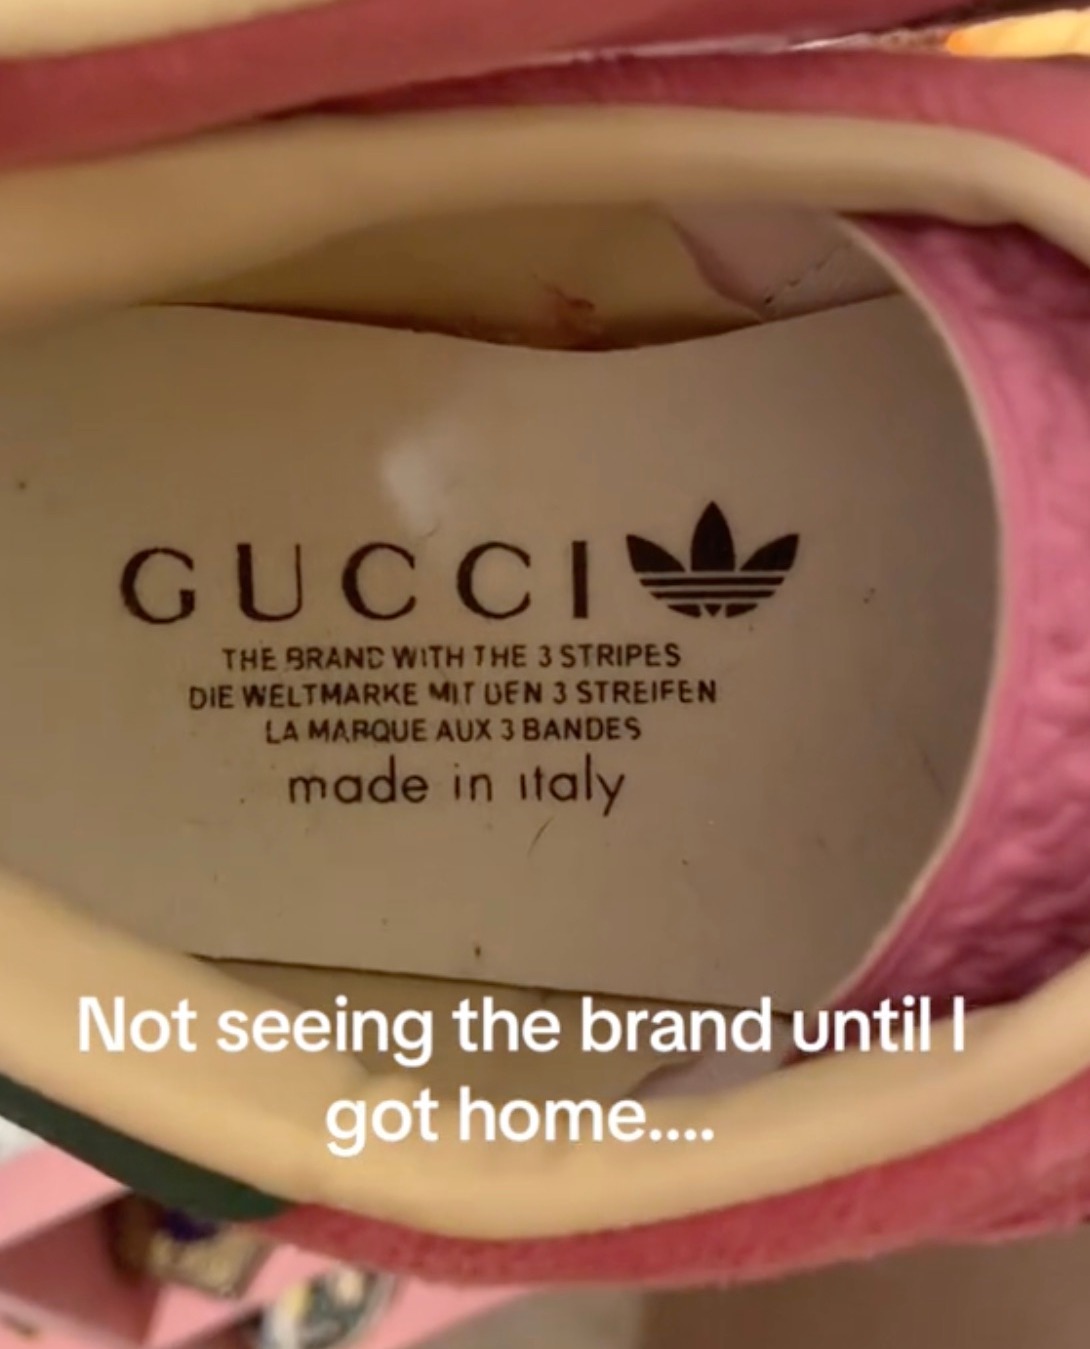 Bei näherer Betrachtung erkannte sie, dass es sich um eine Zusammenarbeit zwischen Gucci und Adidas handelte